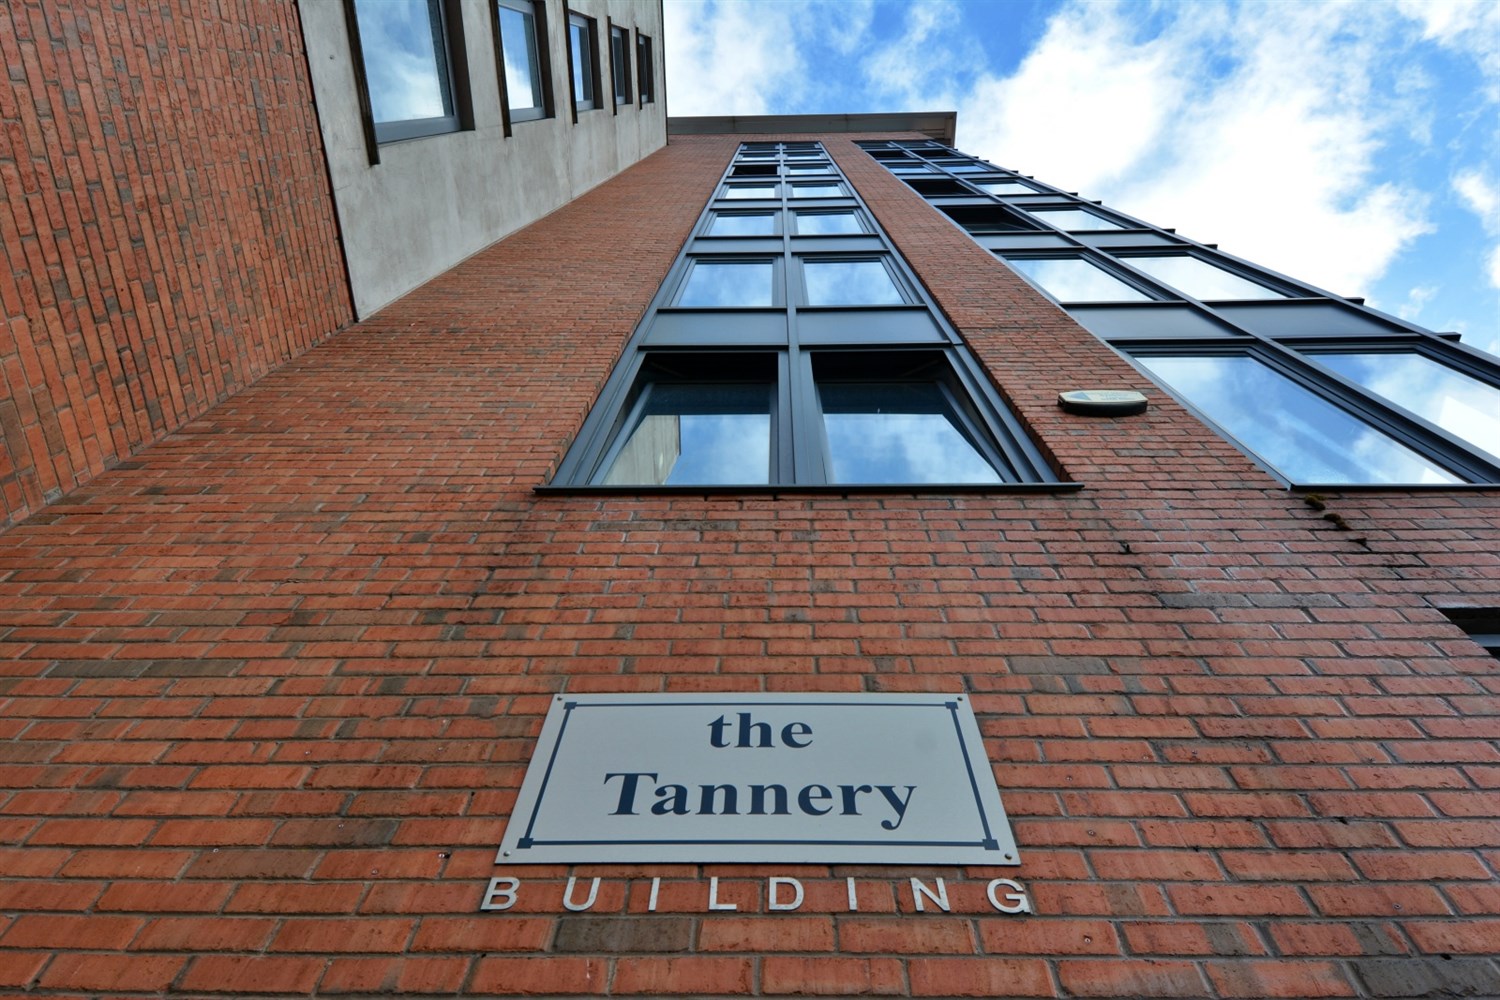 Apt 4 Tannery Buildings, 107 Castle Street, Belfast, BT1 1GJ